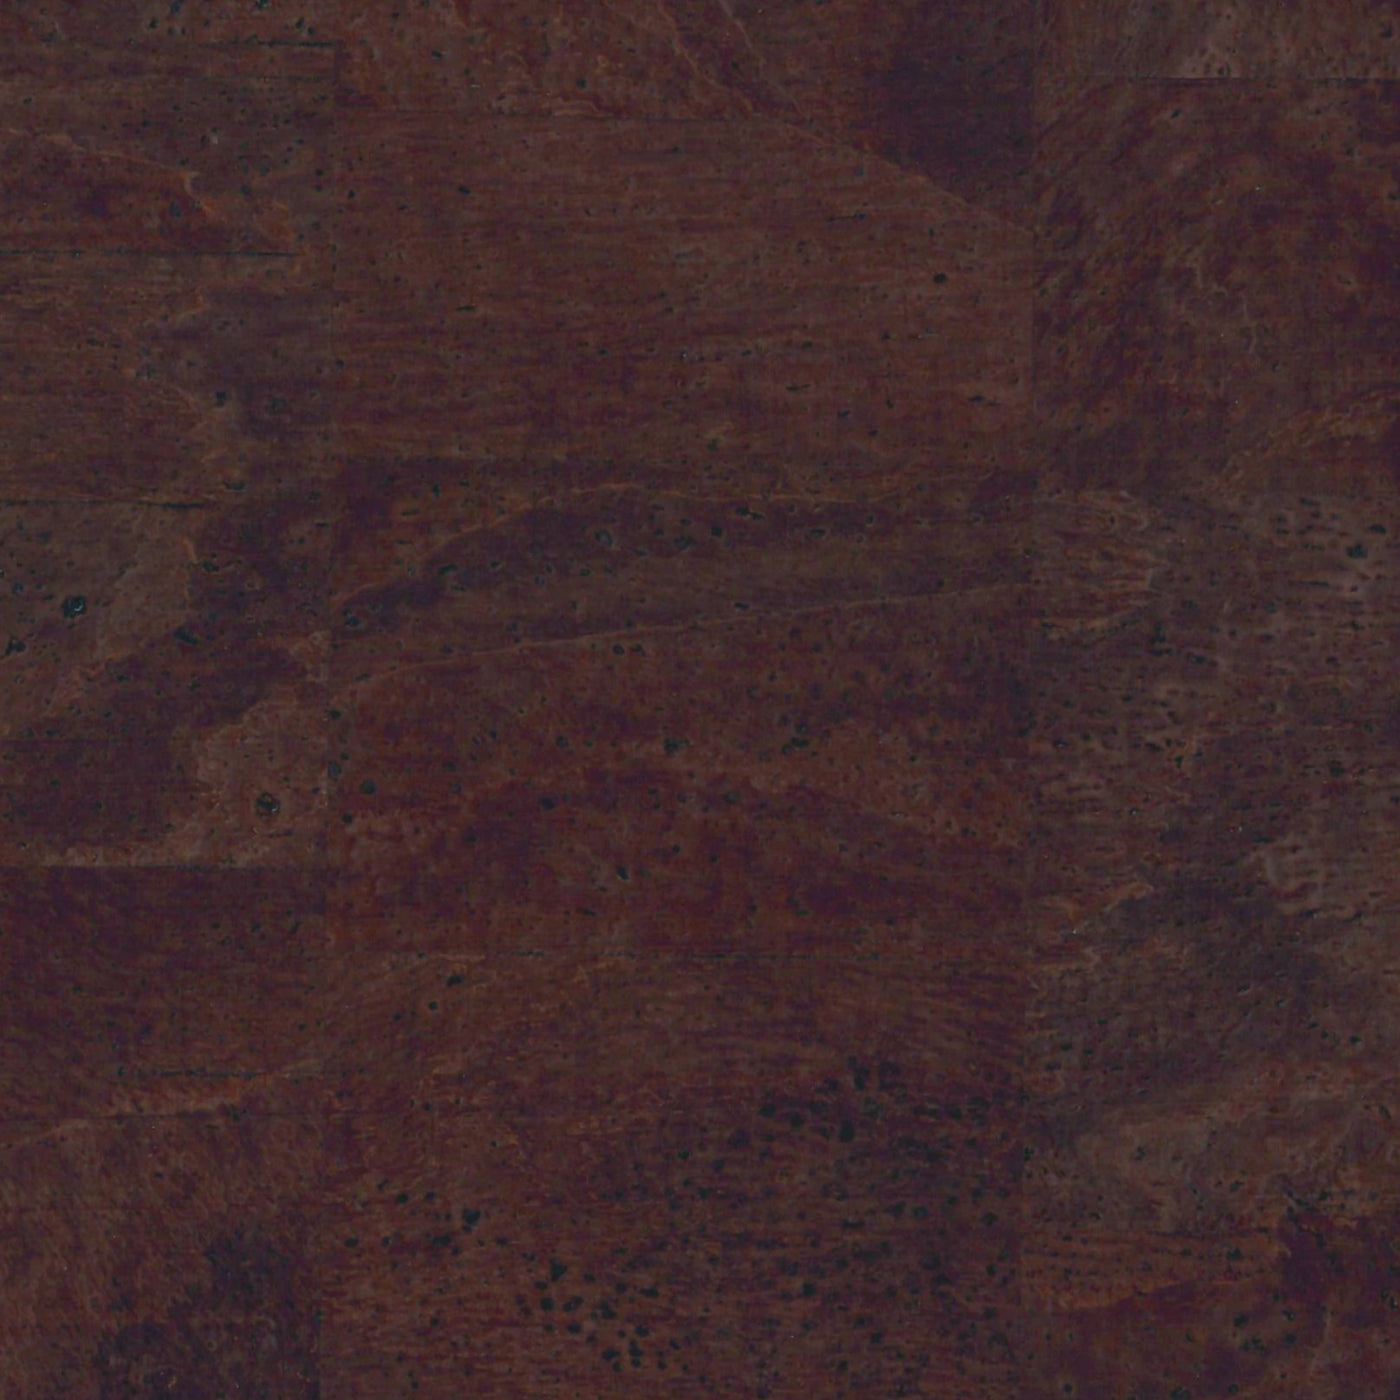 Packaged 1/2 Yard Cut: Surface Walnut Cork Fabric